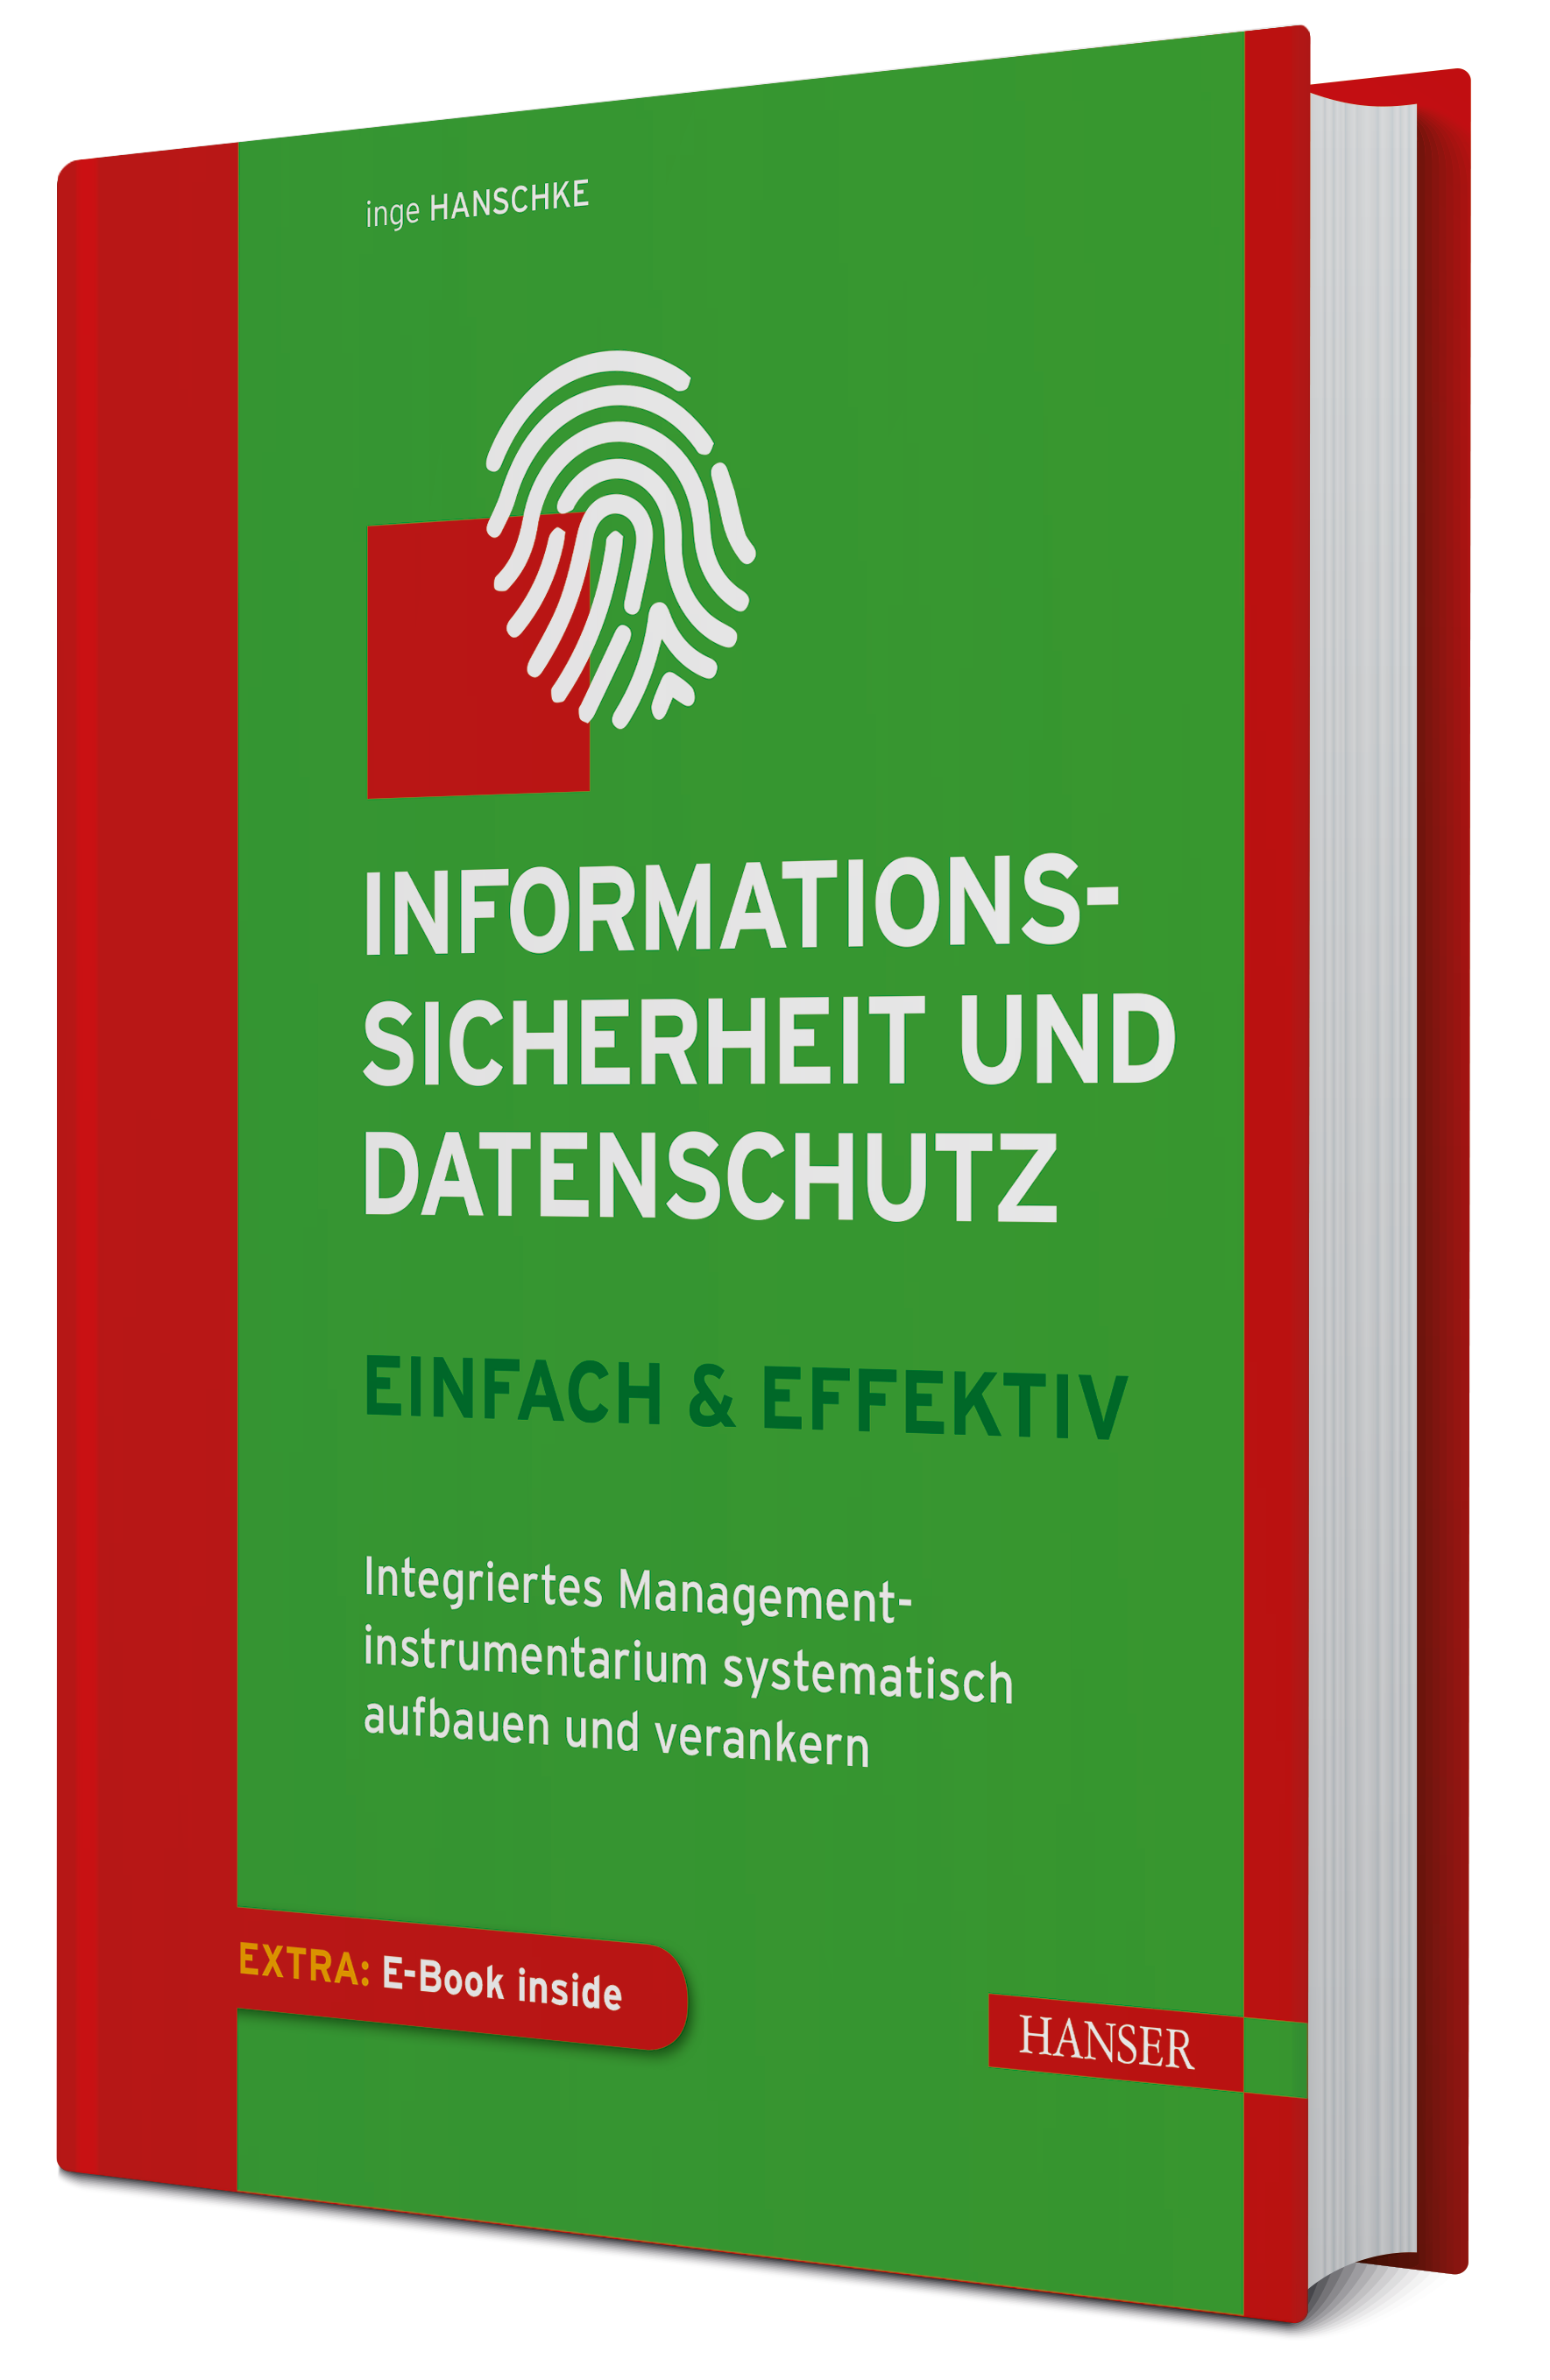 Inge Hanschke “Informationssicherheit und Datenschutz – einfach & effektiv” © 2019 Hanser Fachbuch, Carl Hanser Verlag GmbH & Co. KG